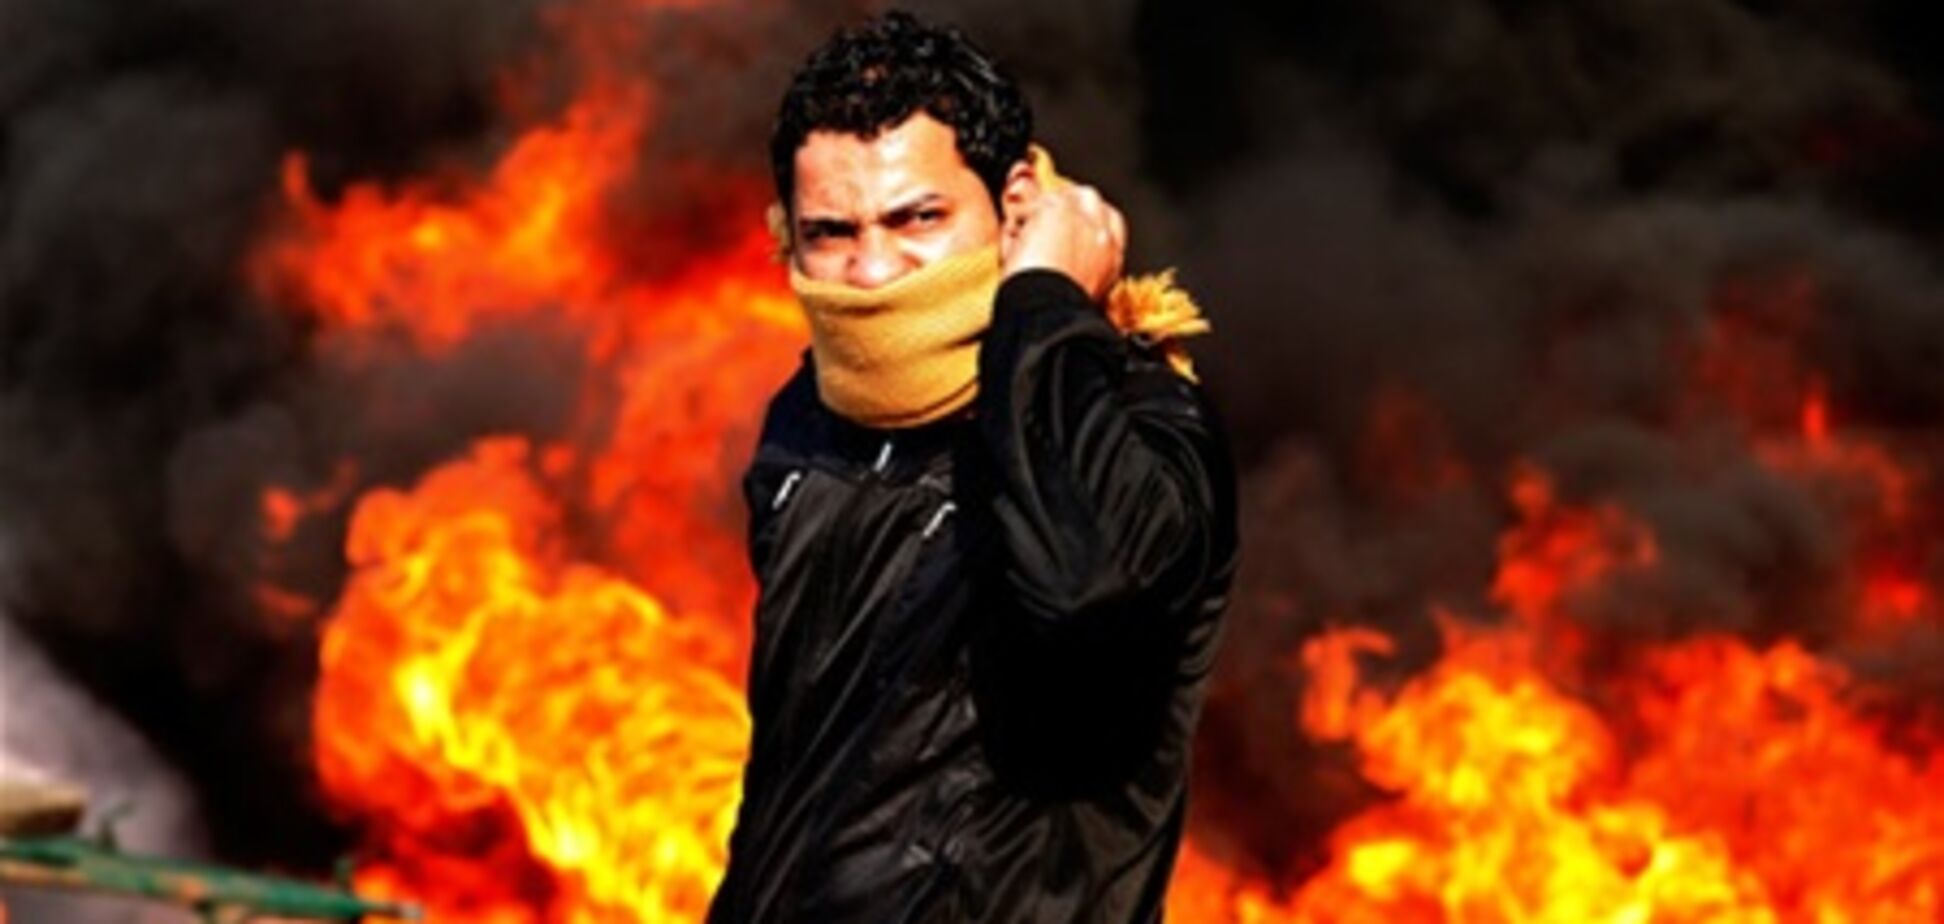 Арабская революция в Бахрейне, Йемене и Ливии. Видео